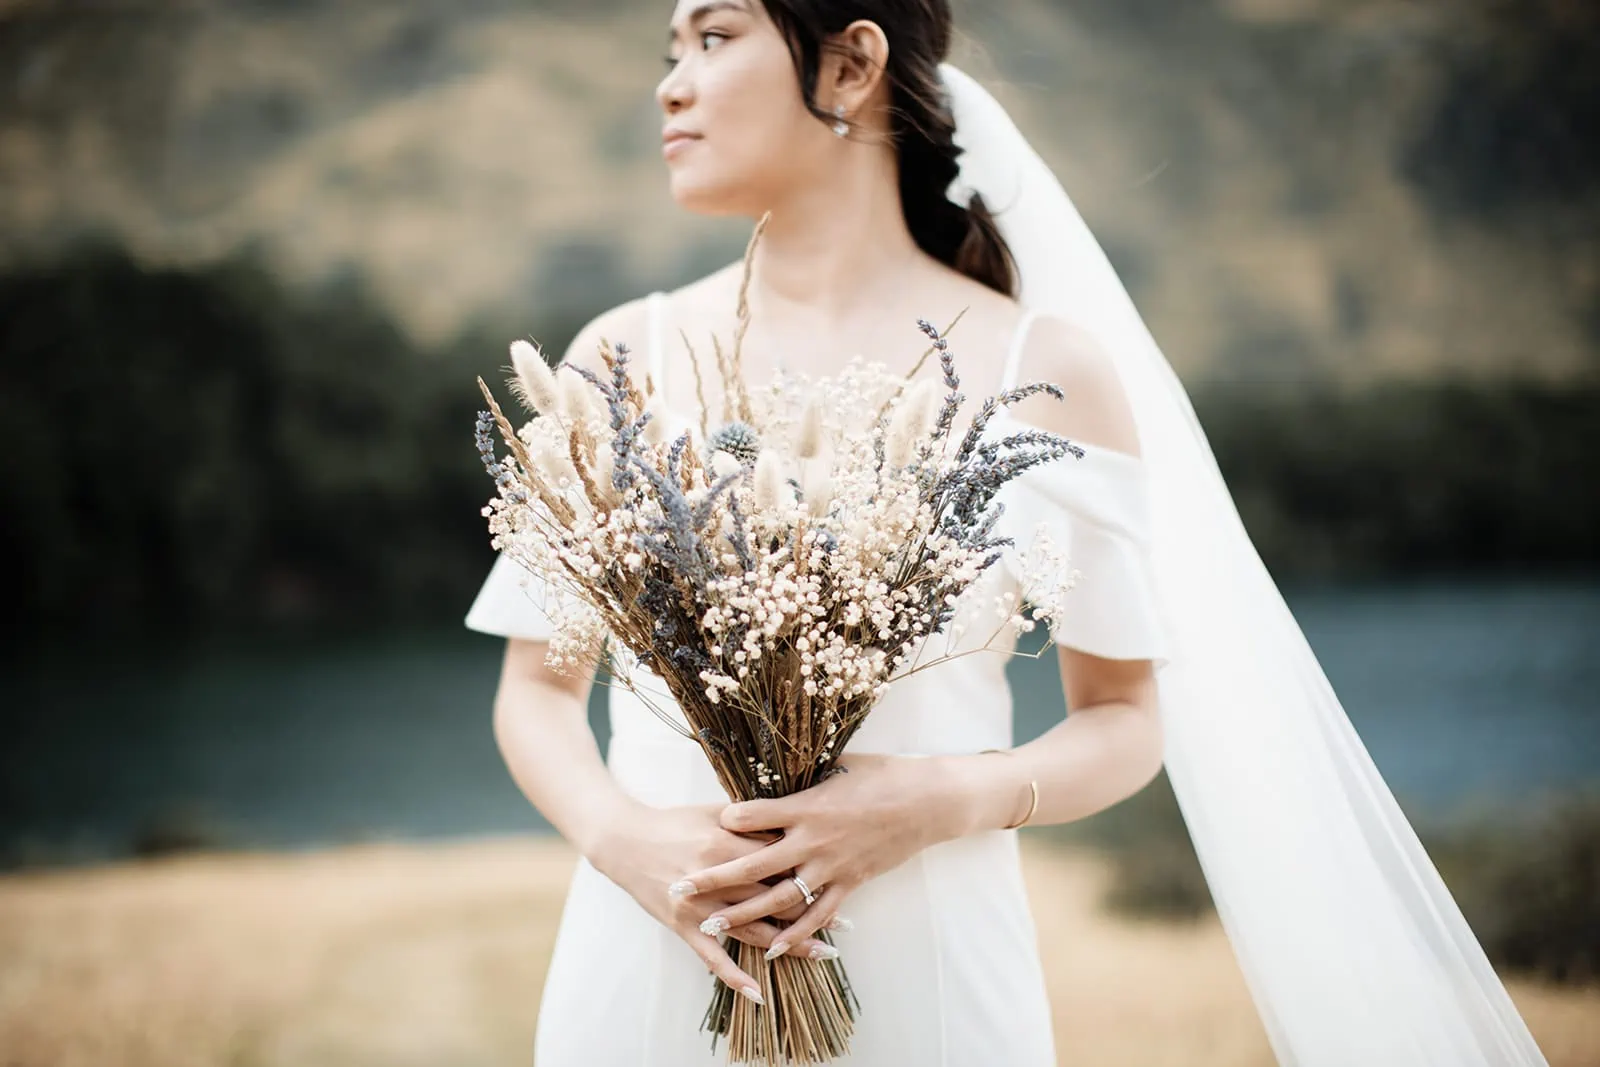 Keywords: bride, bouquet, lake